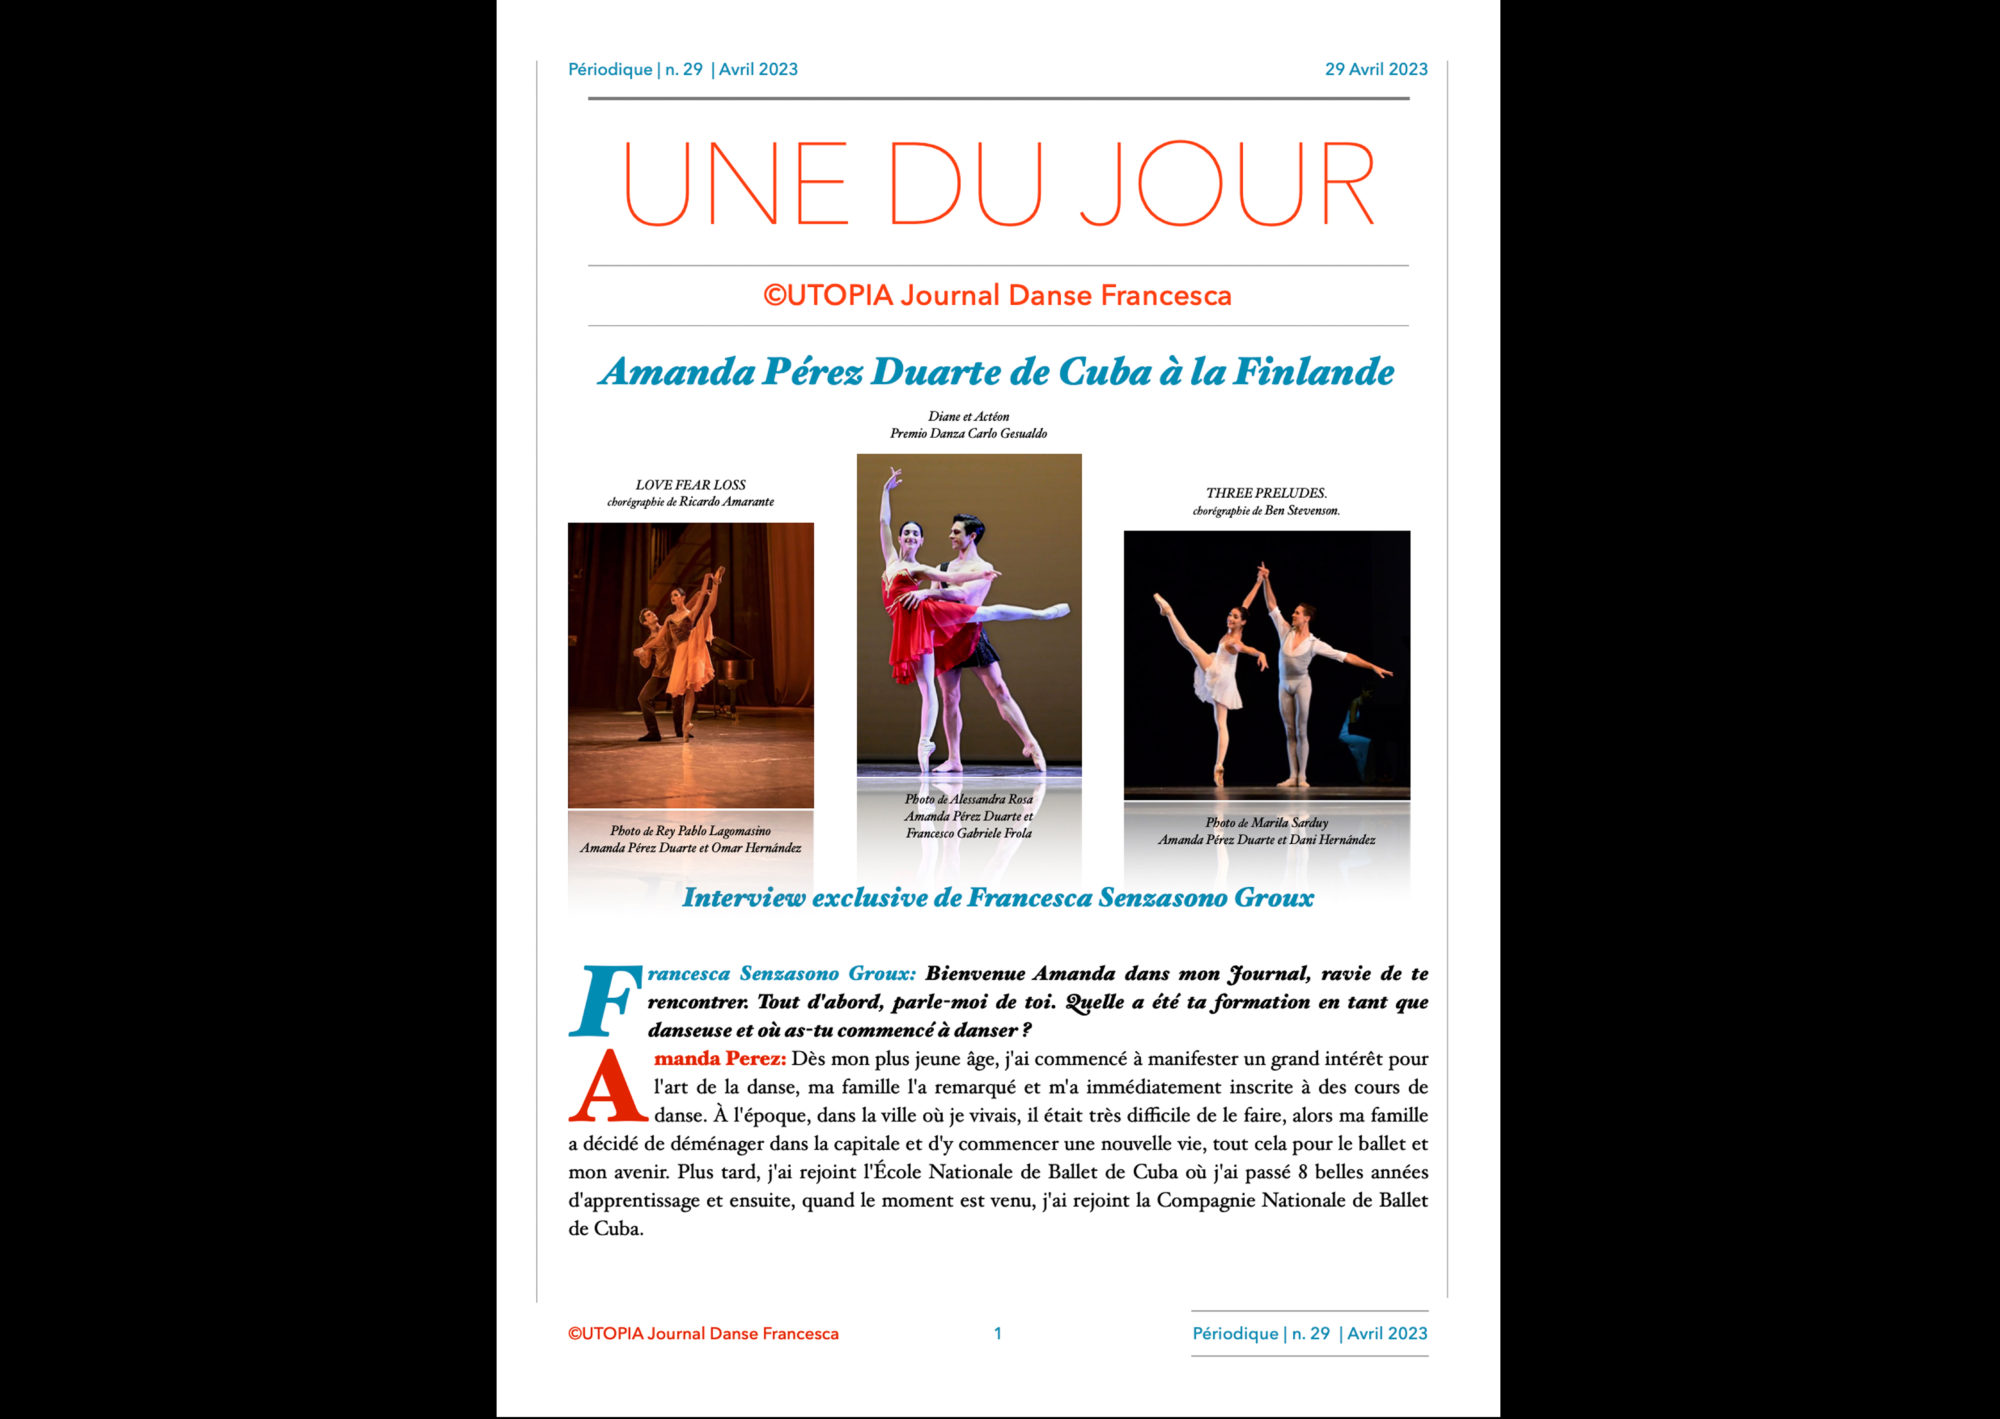 ©UTOPIA Journal Danse Francesca Périodique n.29 29 Avril 2023 page 1